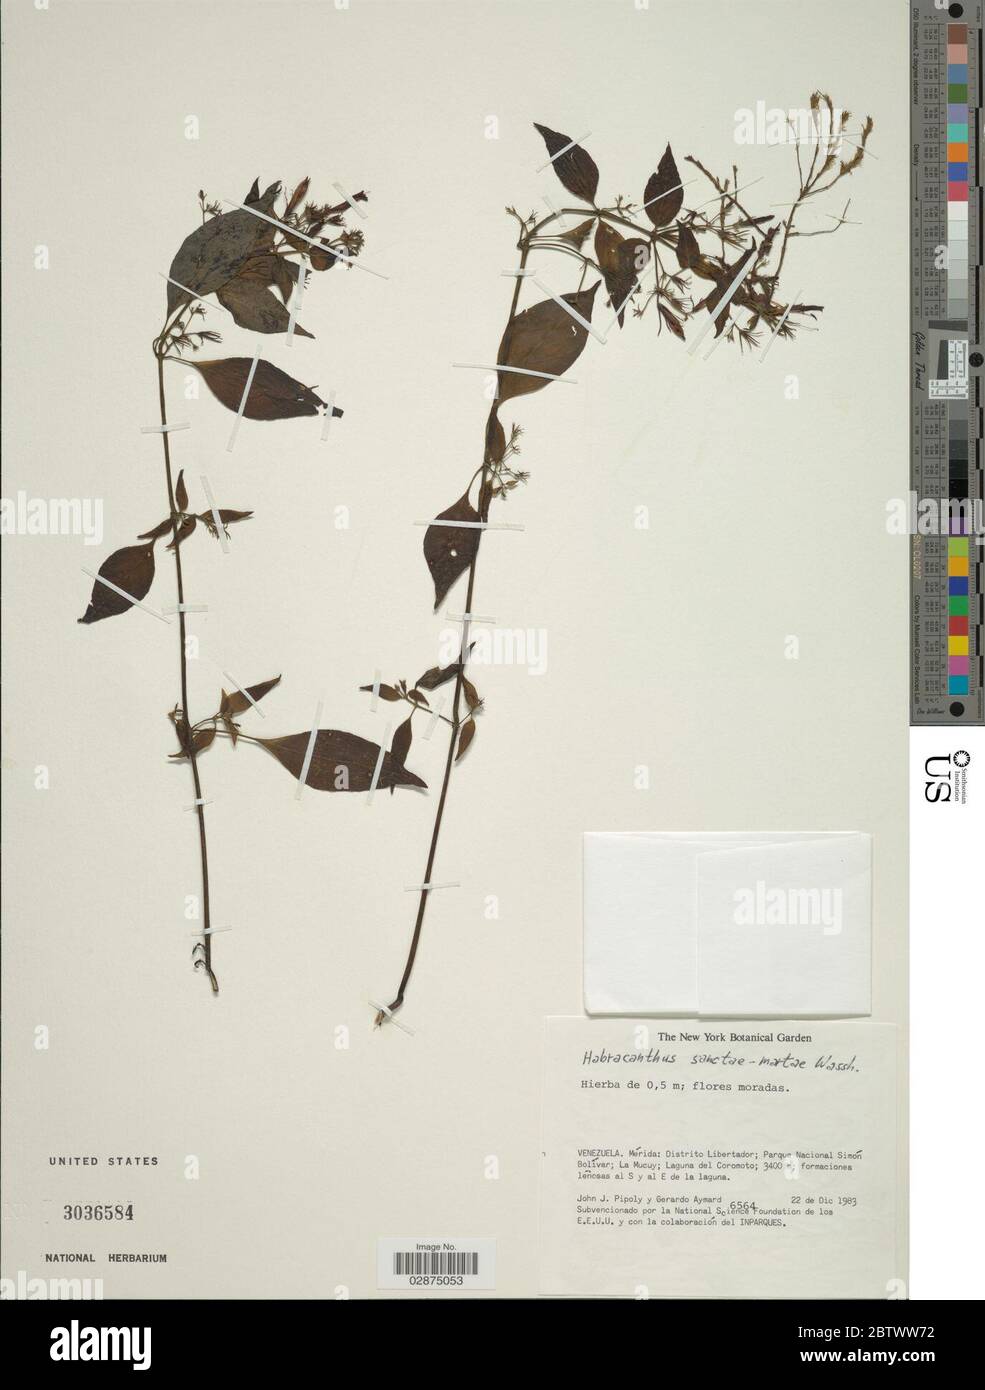 Habracanthus macrochilus Lindau. Stock Photo